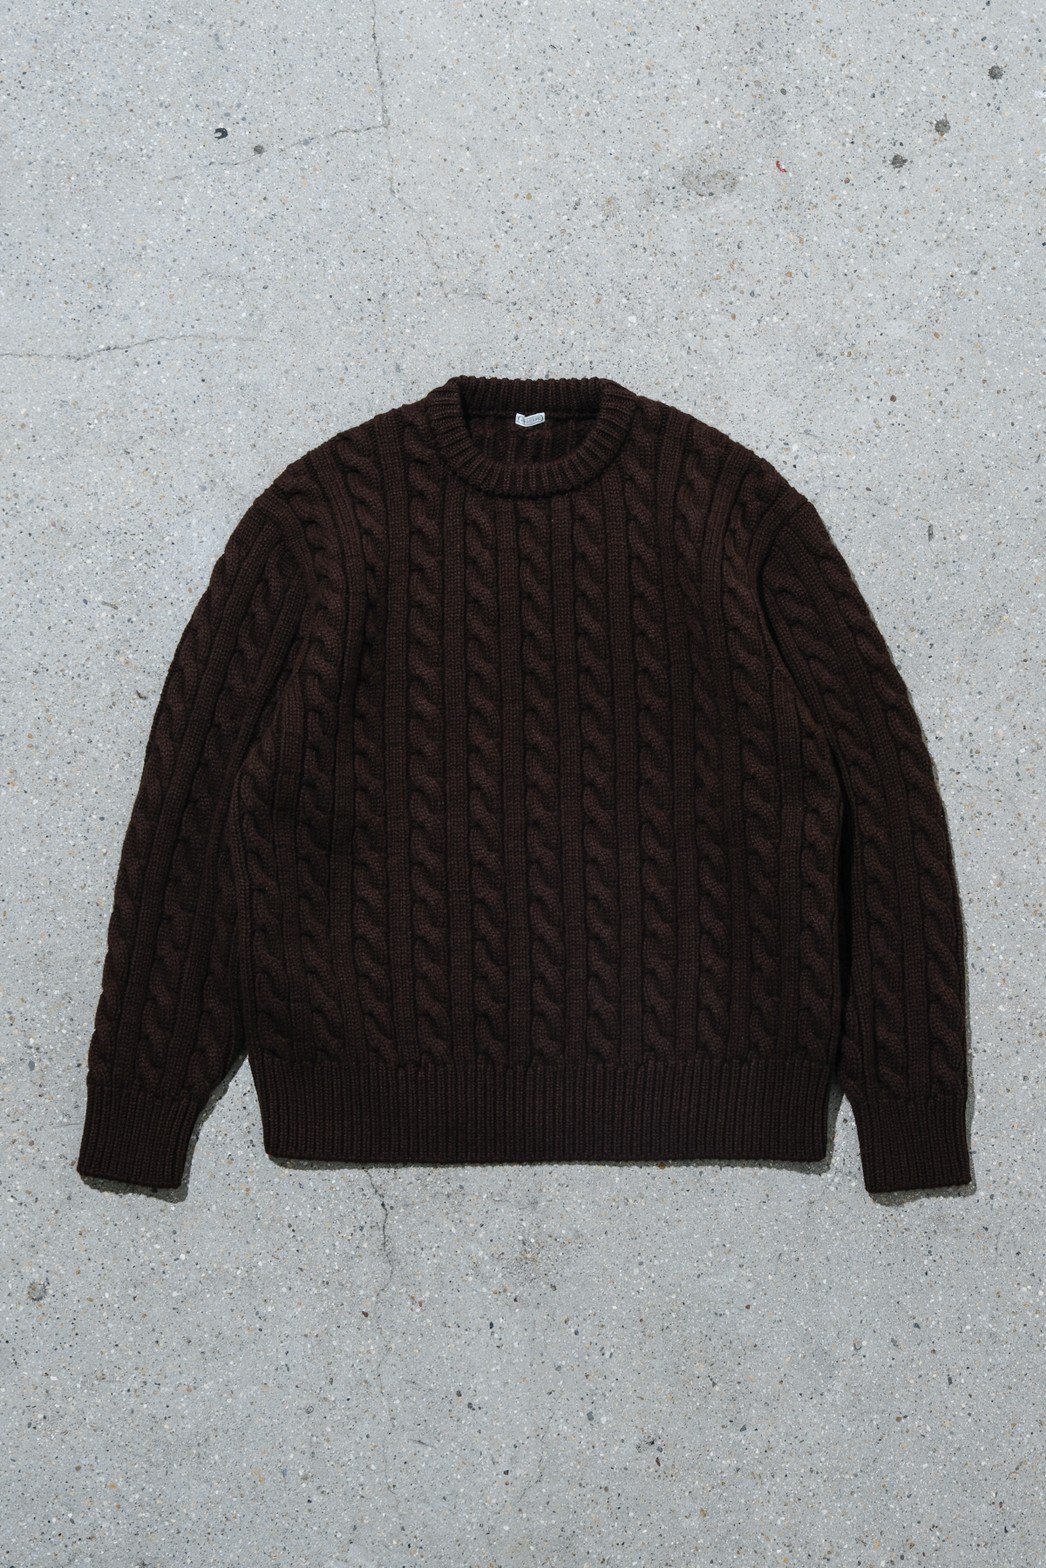 A.PRESSE / Cashmere Aran Sweater